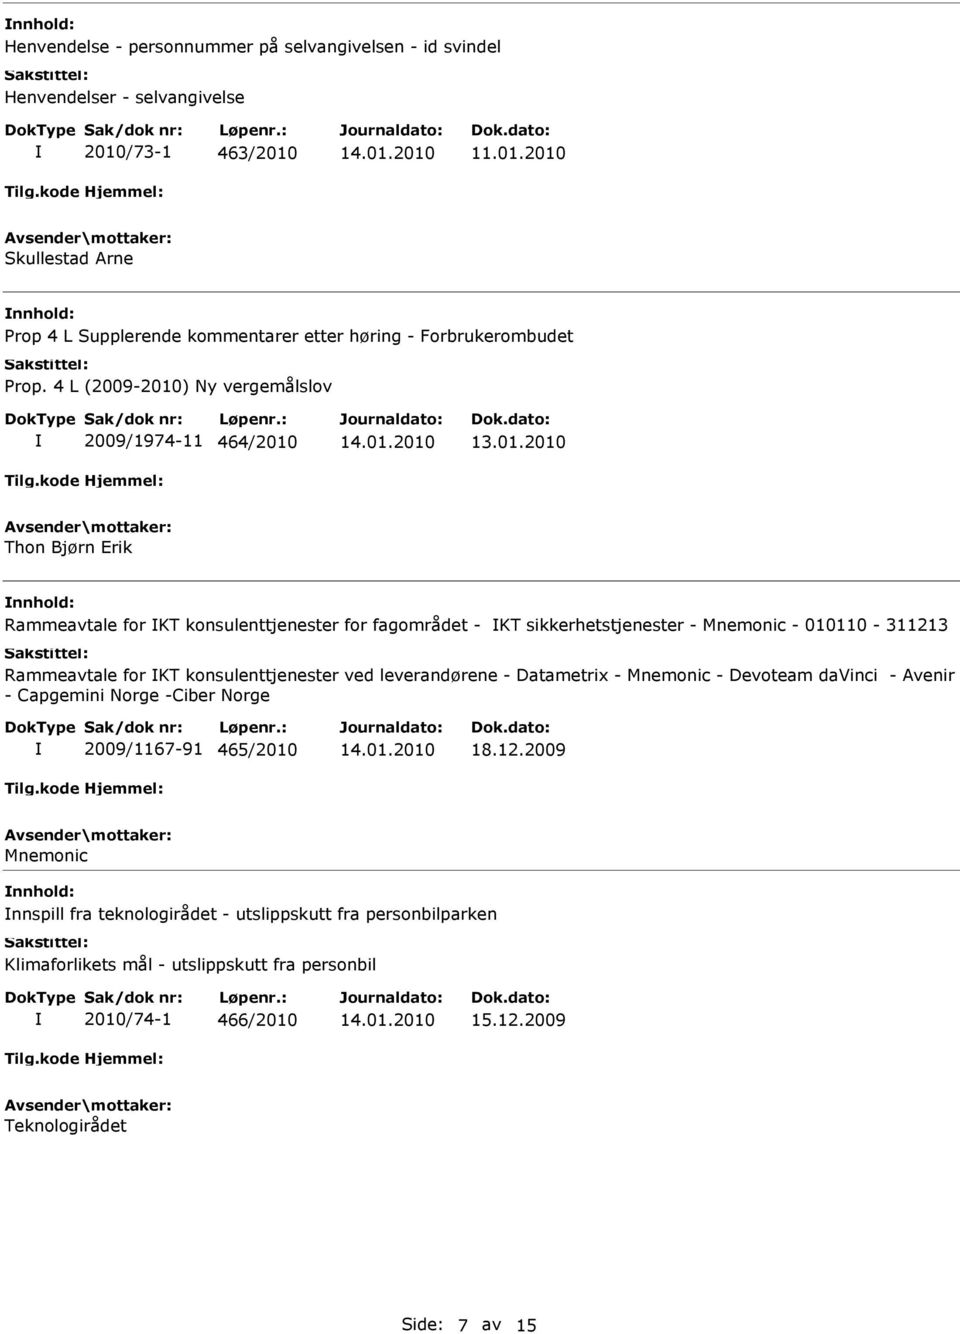 Rammeavtale for KT konsulenttjenester ved leverandørene - Datametrix - Mnemonic - Devoteam davinci - Avenir - Capgemini Norge -Ciber Norge 2009/1167-91 465/2010 18.12.